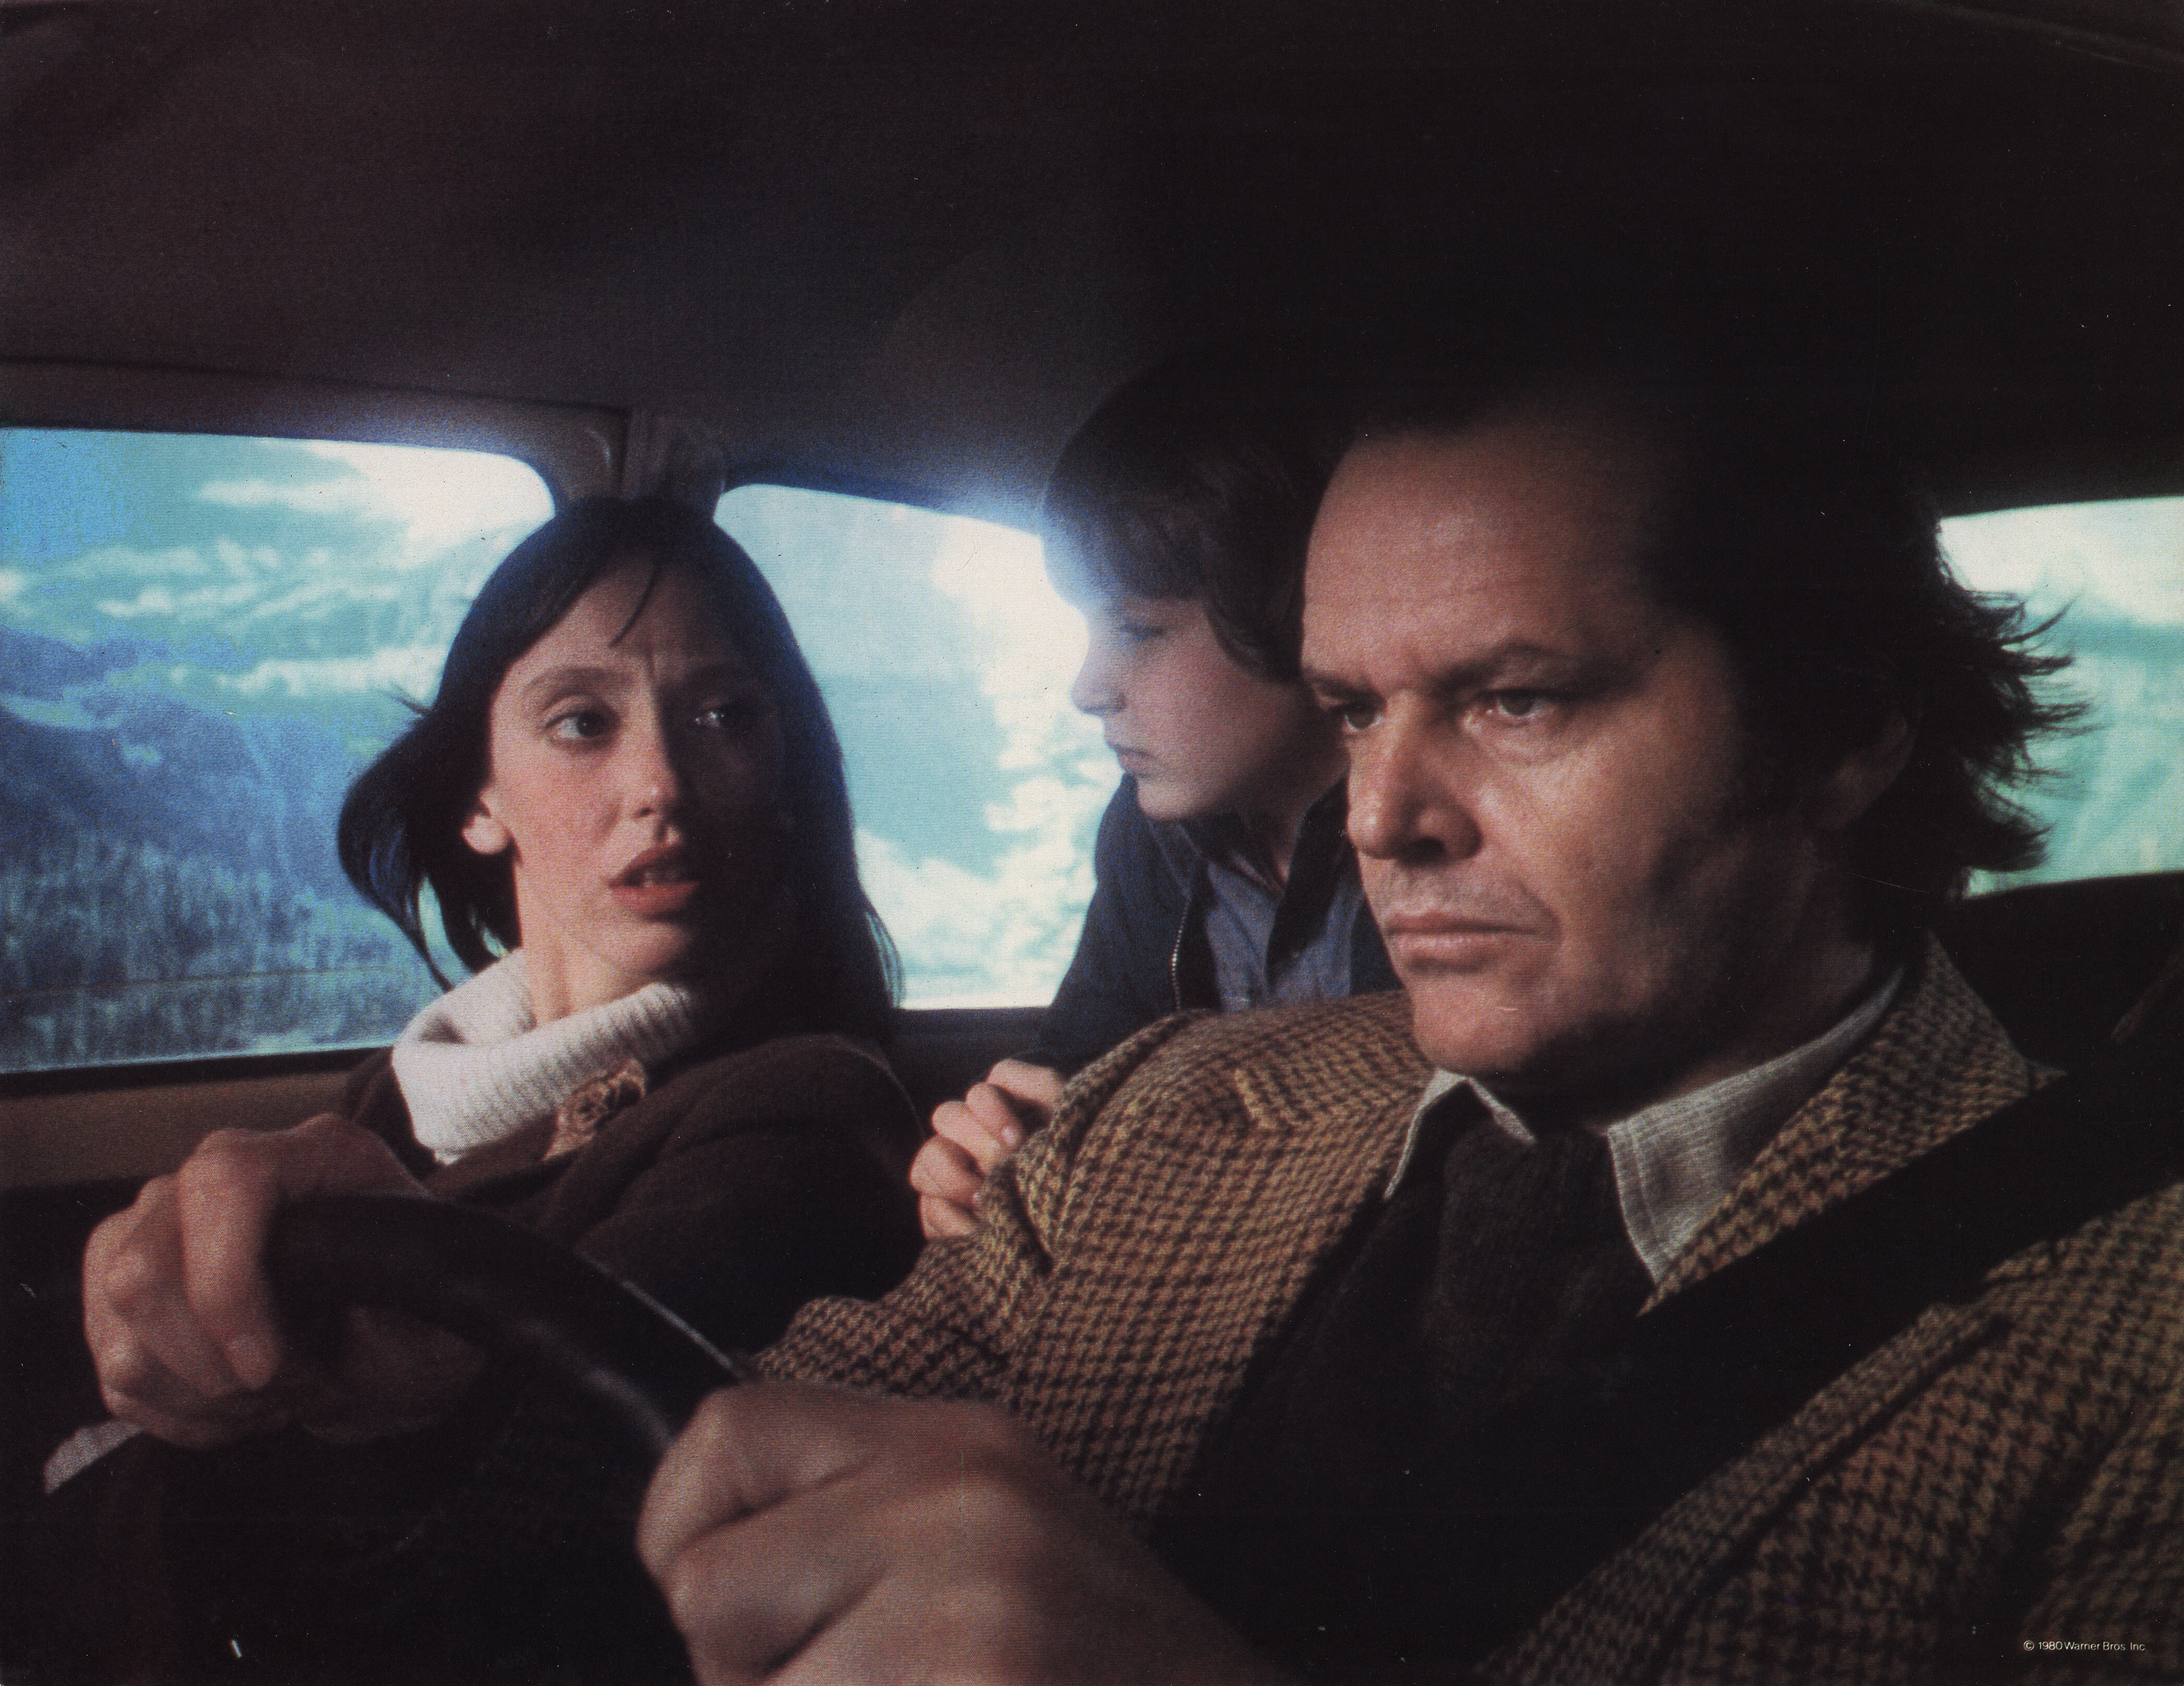 Сияние (The Shining, 1980), режиссёр Стэнли Кубрик, американский постер к фильму (ужасы, 1980 год) (4)